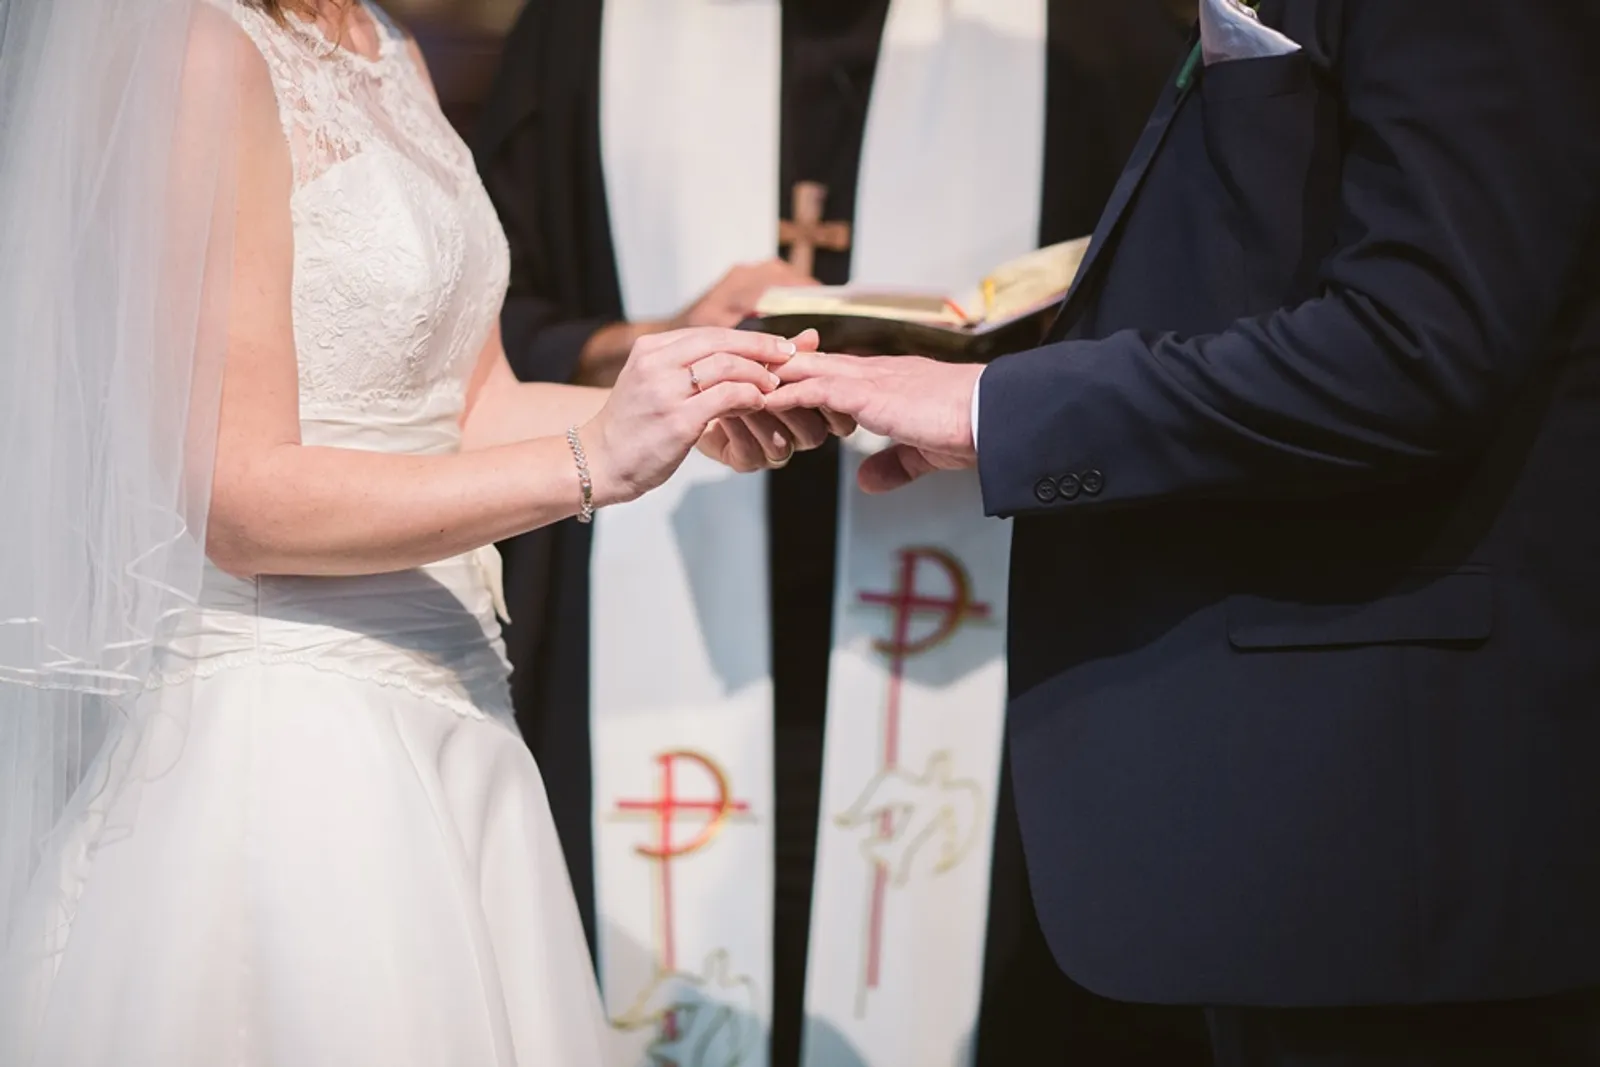 Ketahui Bedanya, Ini 7 Jenis Upacara Pernikahan yang Biasa Dilakukan